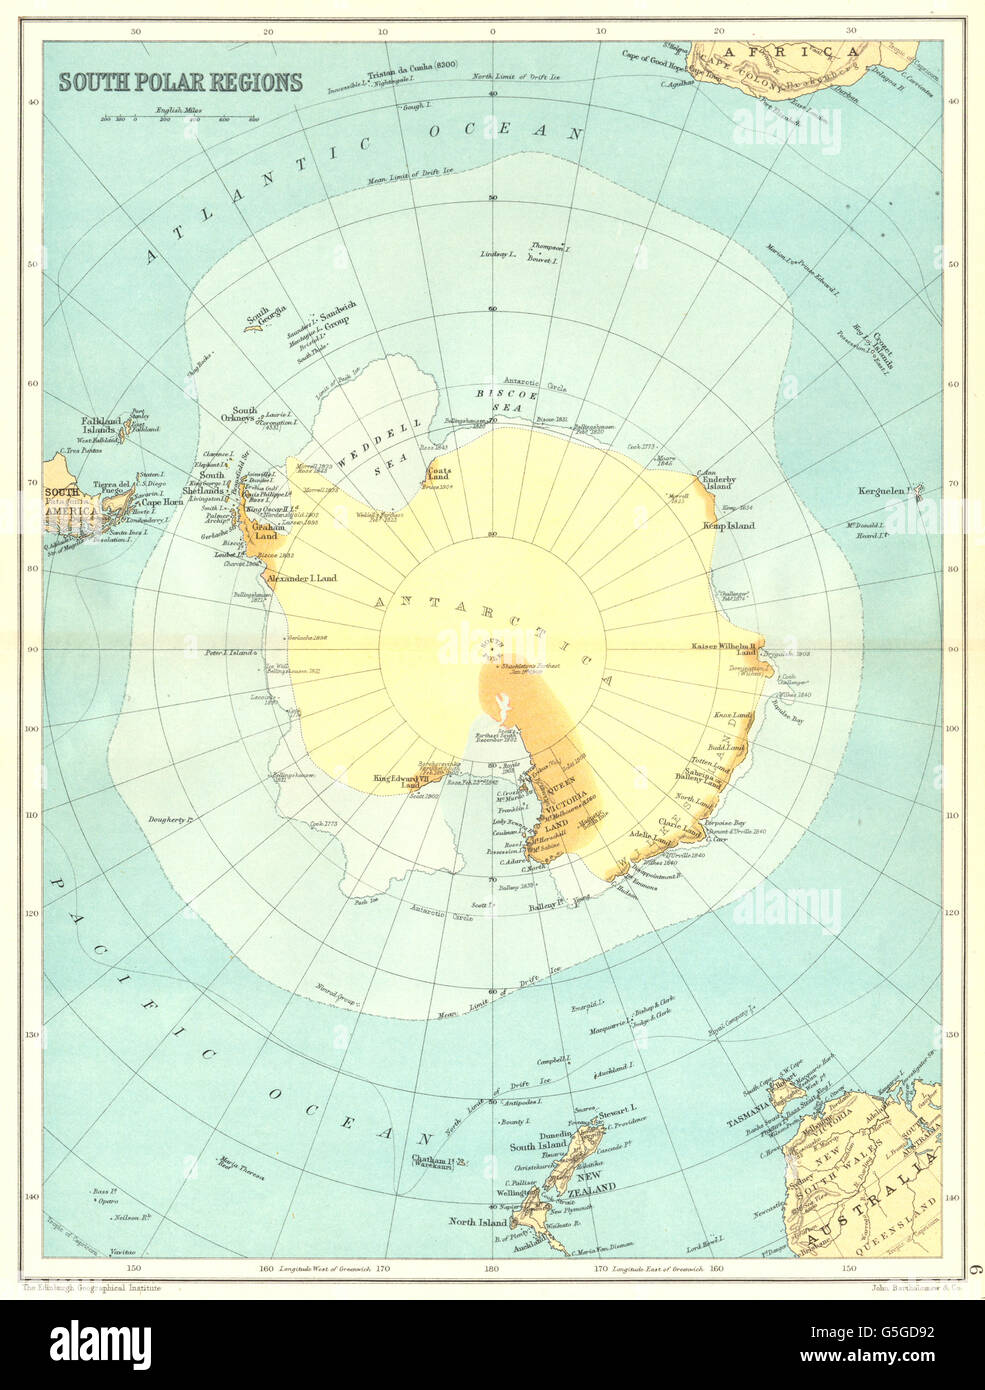 Südpol: Antarktischen Ross Weddell Royds Scott Shackleton Ansätze, 1909-Karte Stockfoto